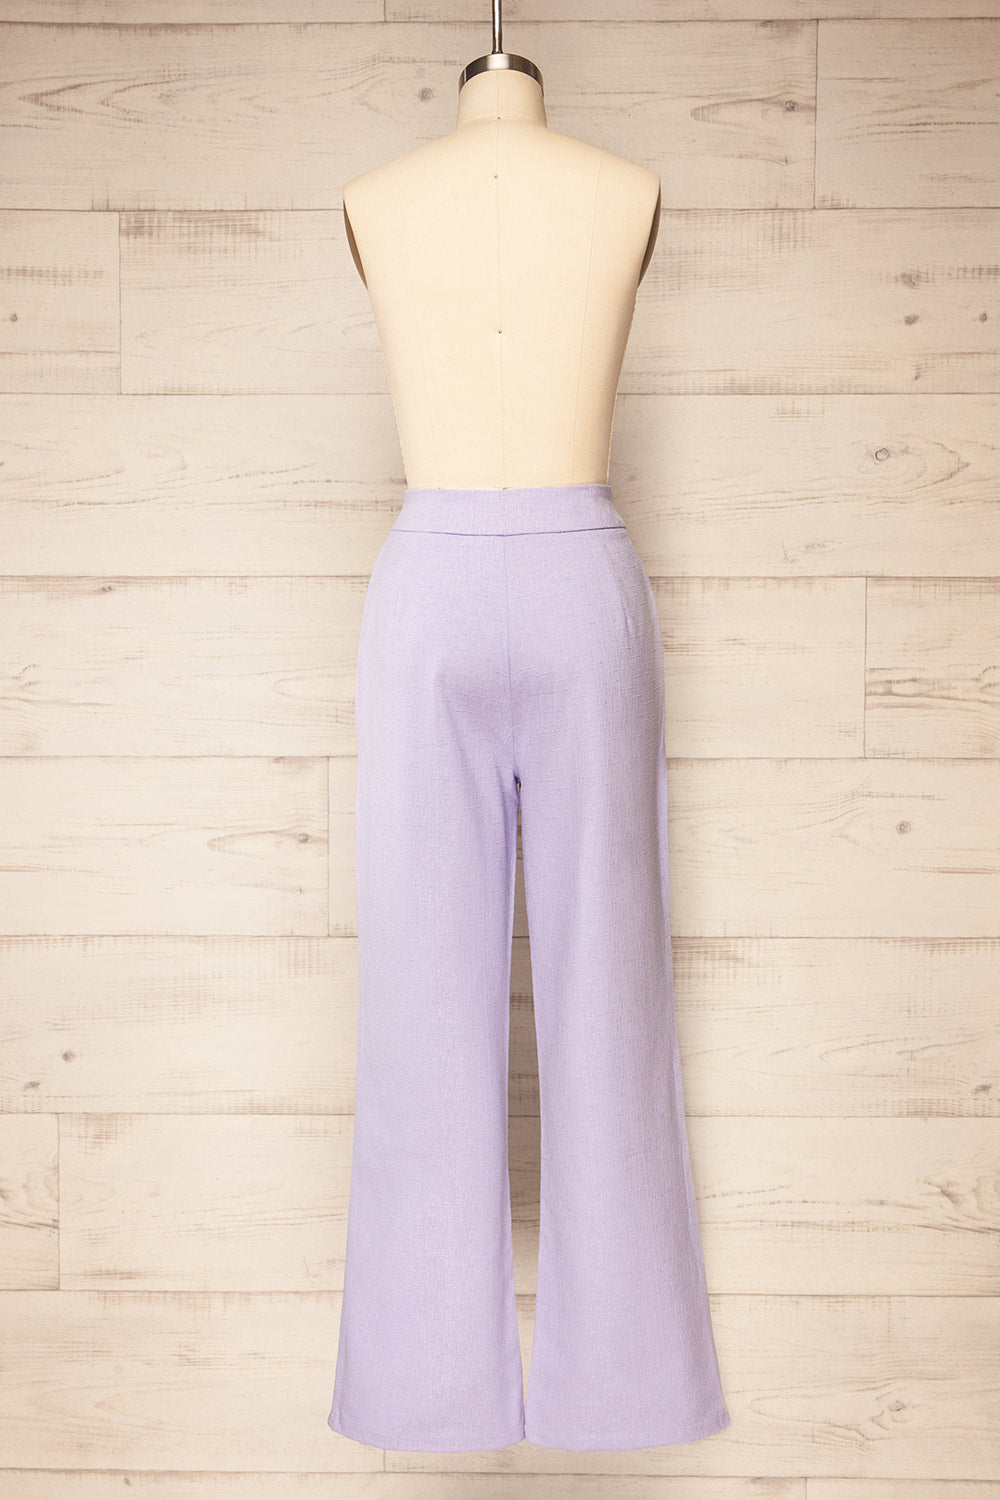 Sackville Lilac Textured Wide-Leg Pants | La petite garçonne back view